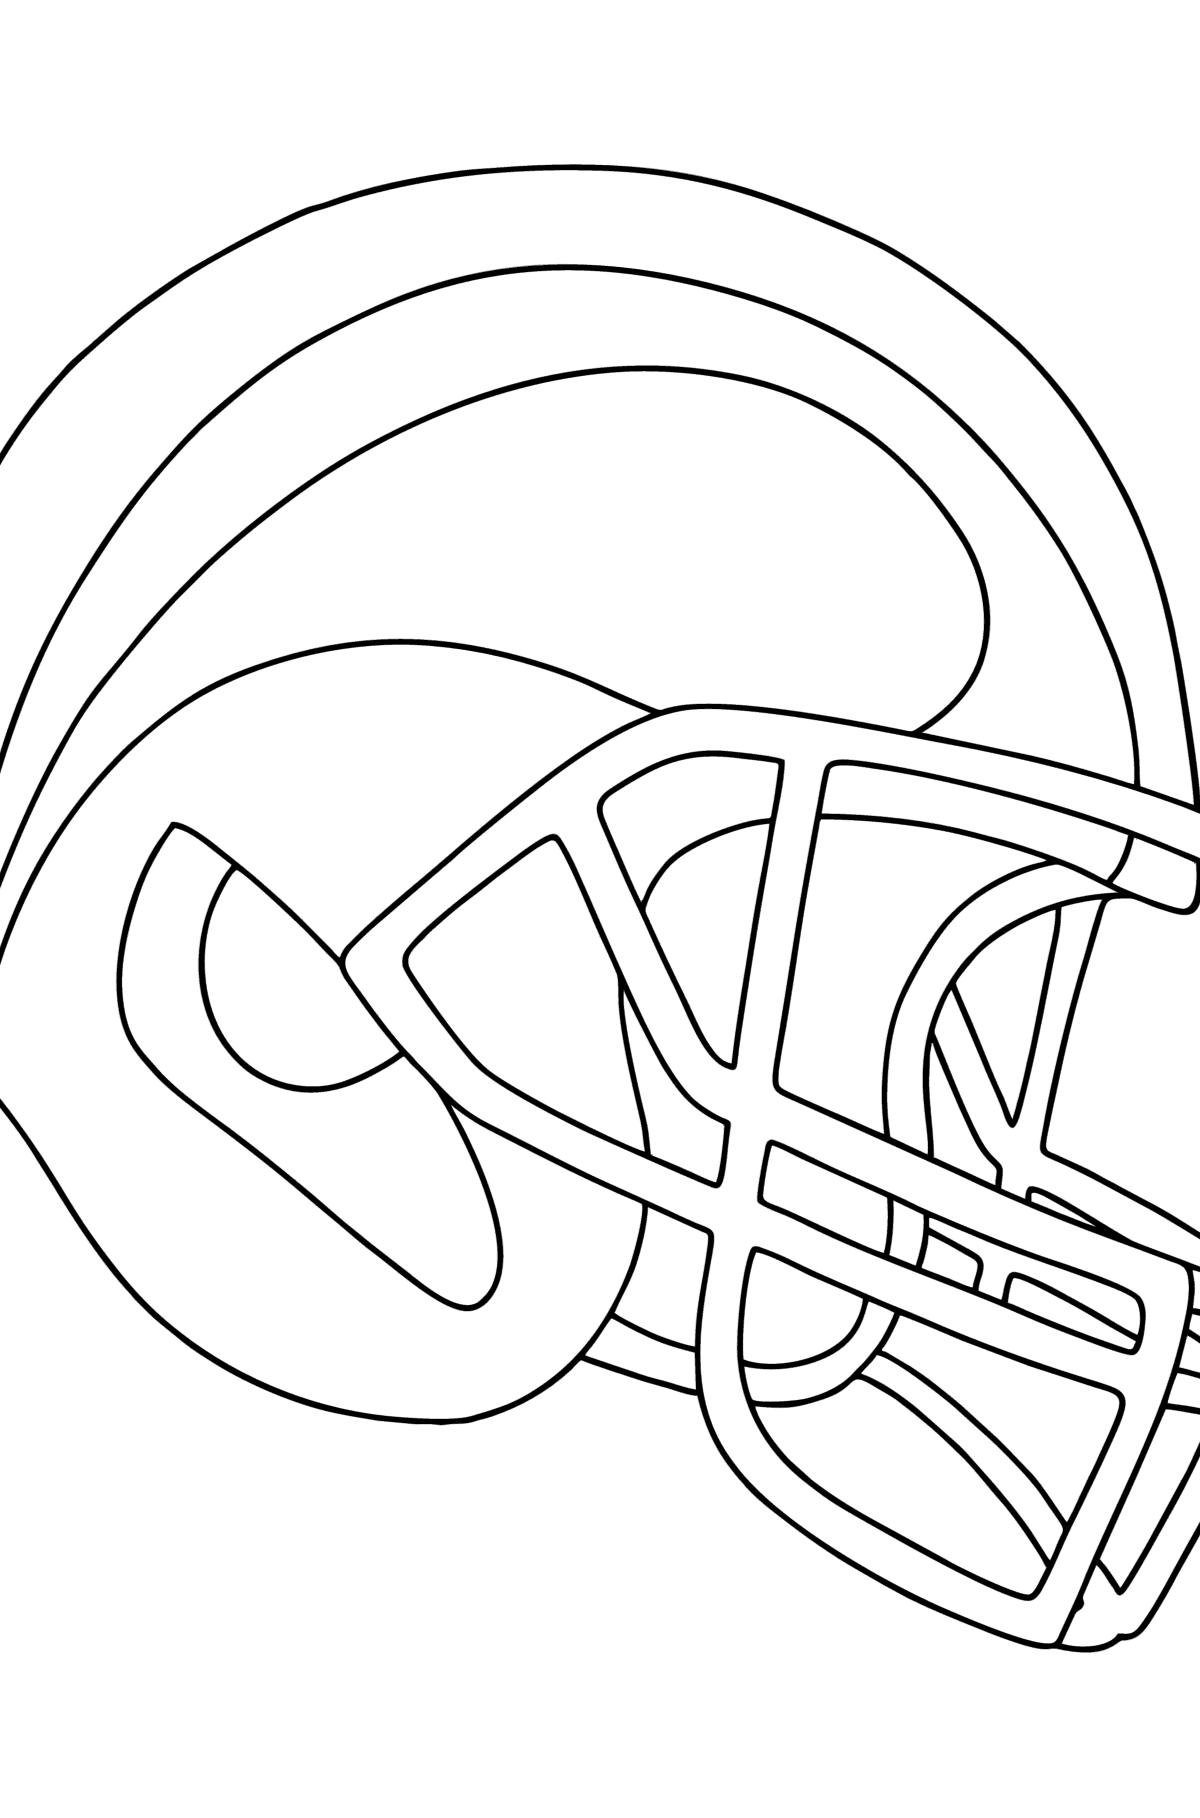 Desenho Capacete de segurança da NFL para colorir - Imagens para Colorir para Crianças